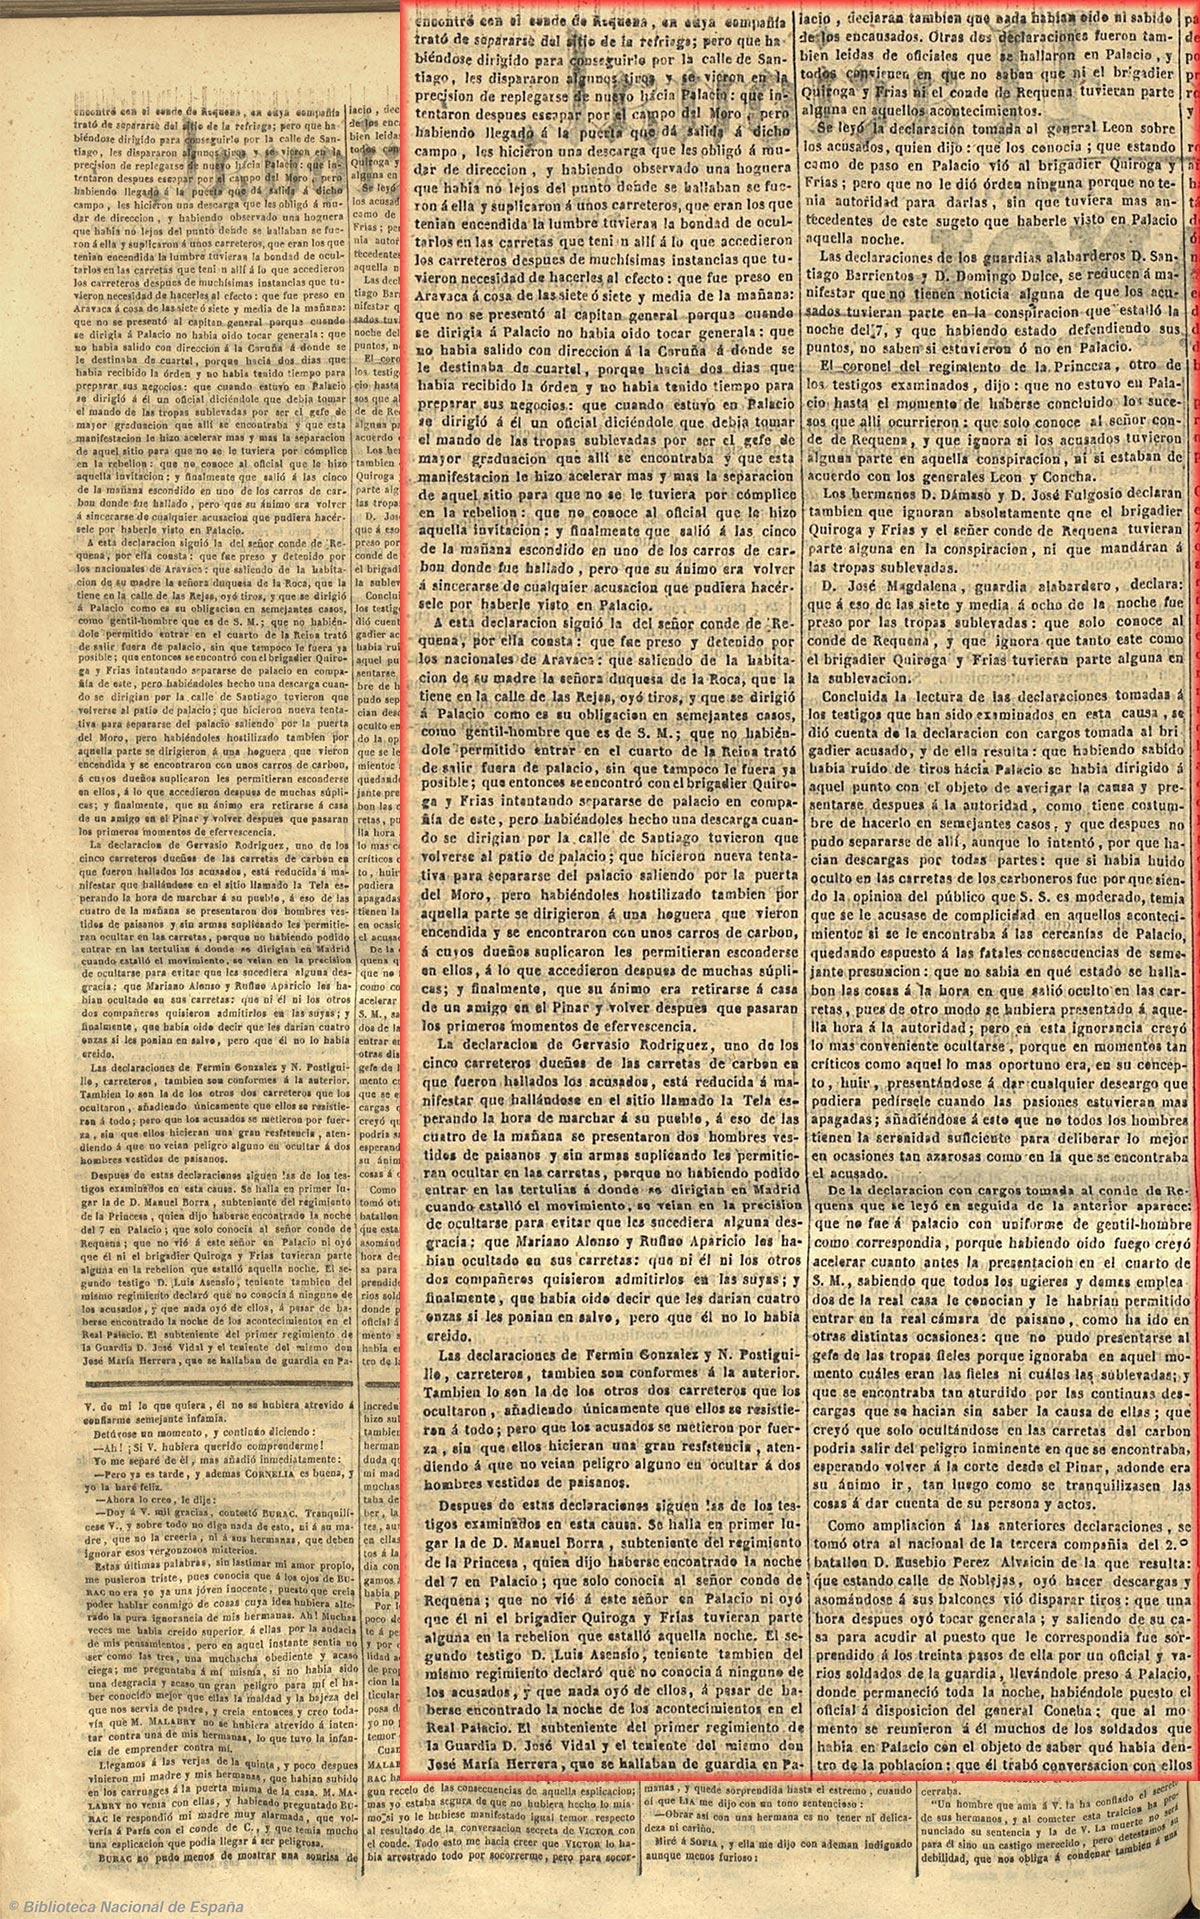 Consejo de guerra sobre los sucesos del 7 de octubre (asalto al Palacio Real). El correo nacional 25-10-1841, página 2 parte primera